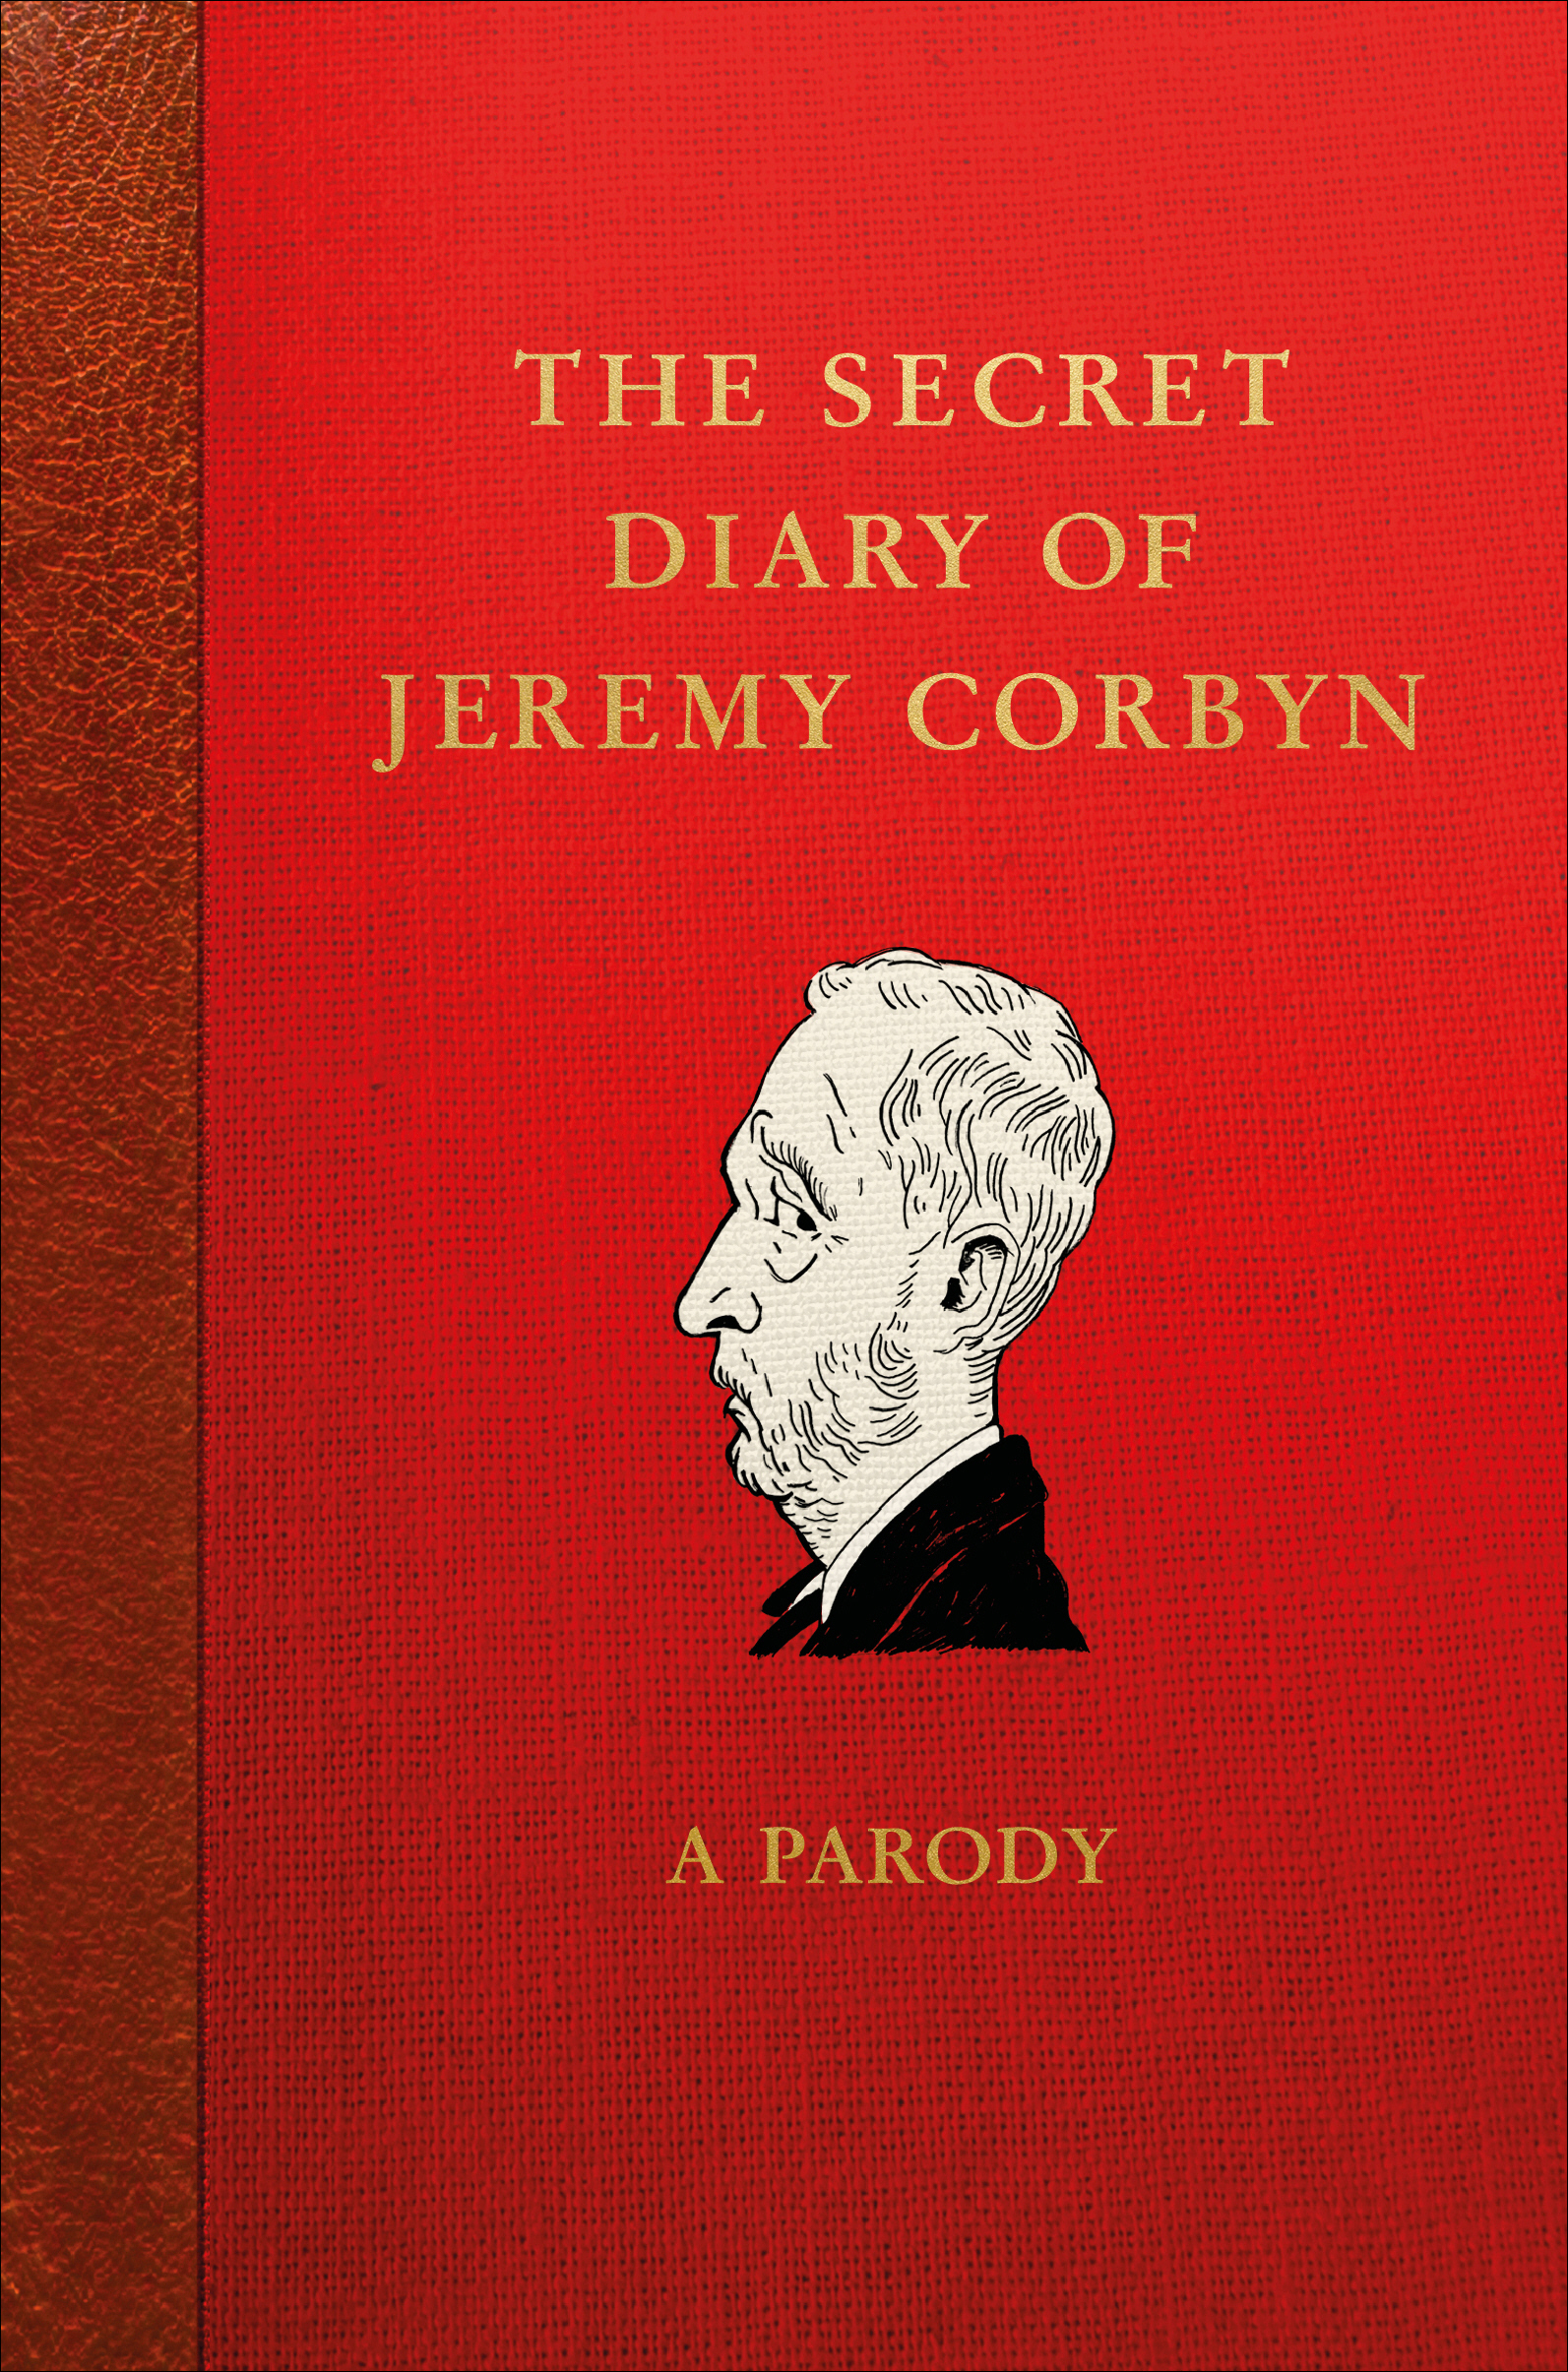 The Secret Diary of Jeremy Corbyn - 15-24.99